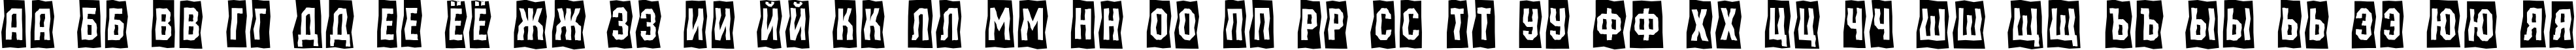 Пример написания русского алфавита шрифтом a_MachinaOrtoSls